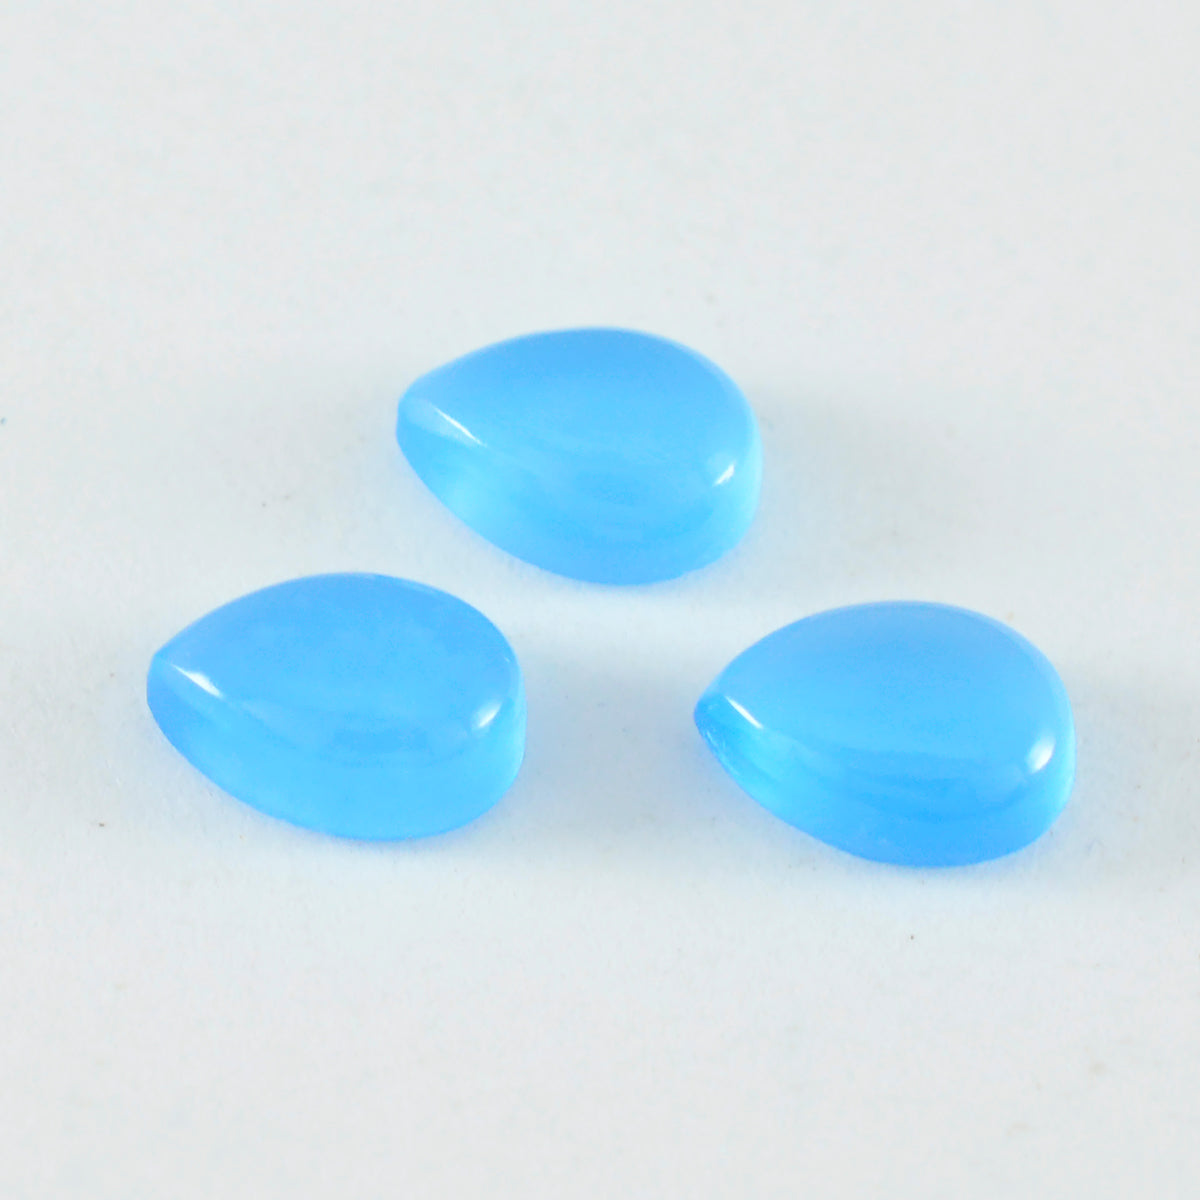 riyogems 1pc cabochon di calcedonio blu 7x10 mm forma pera pietra sfusa qualità a+